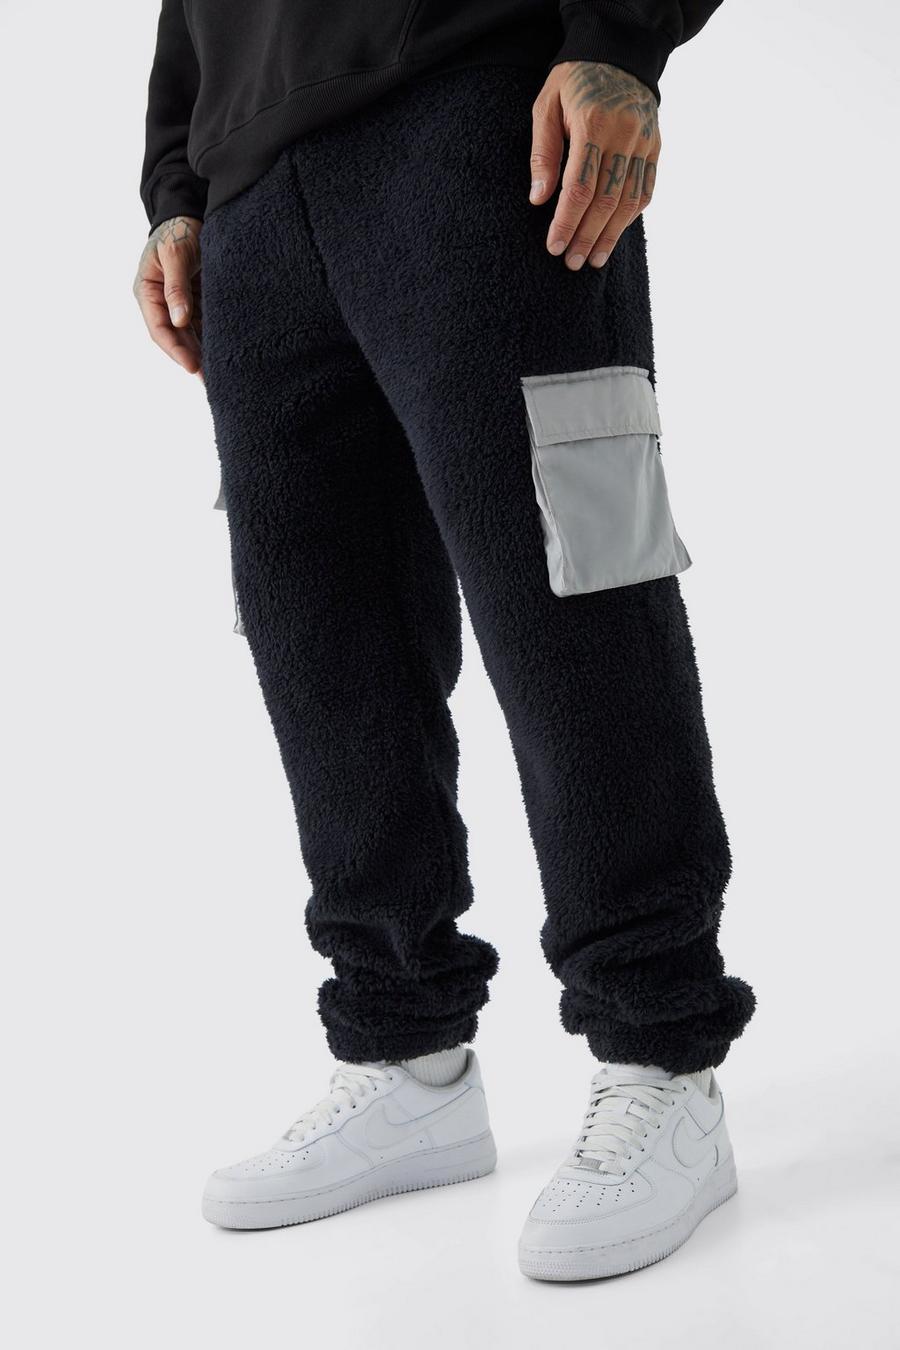 Pantaloni tuta Tall in pile borg con tasche Cargo in nylon, Black